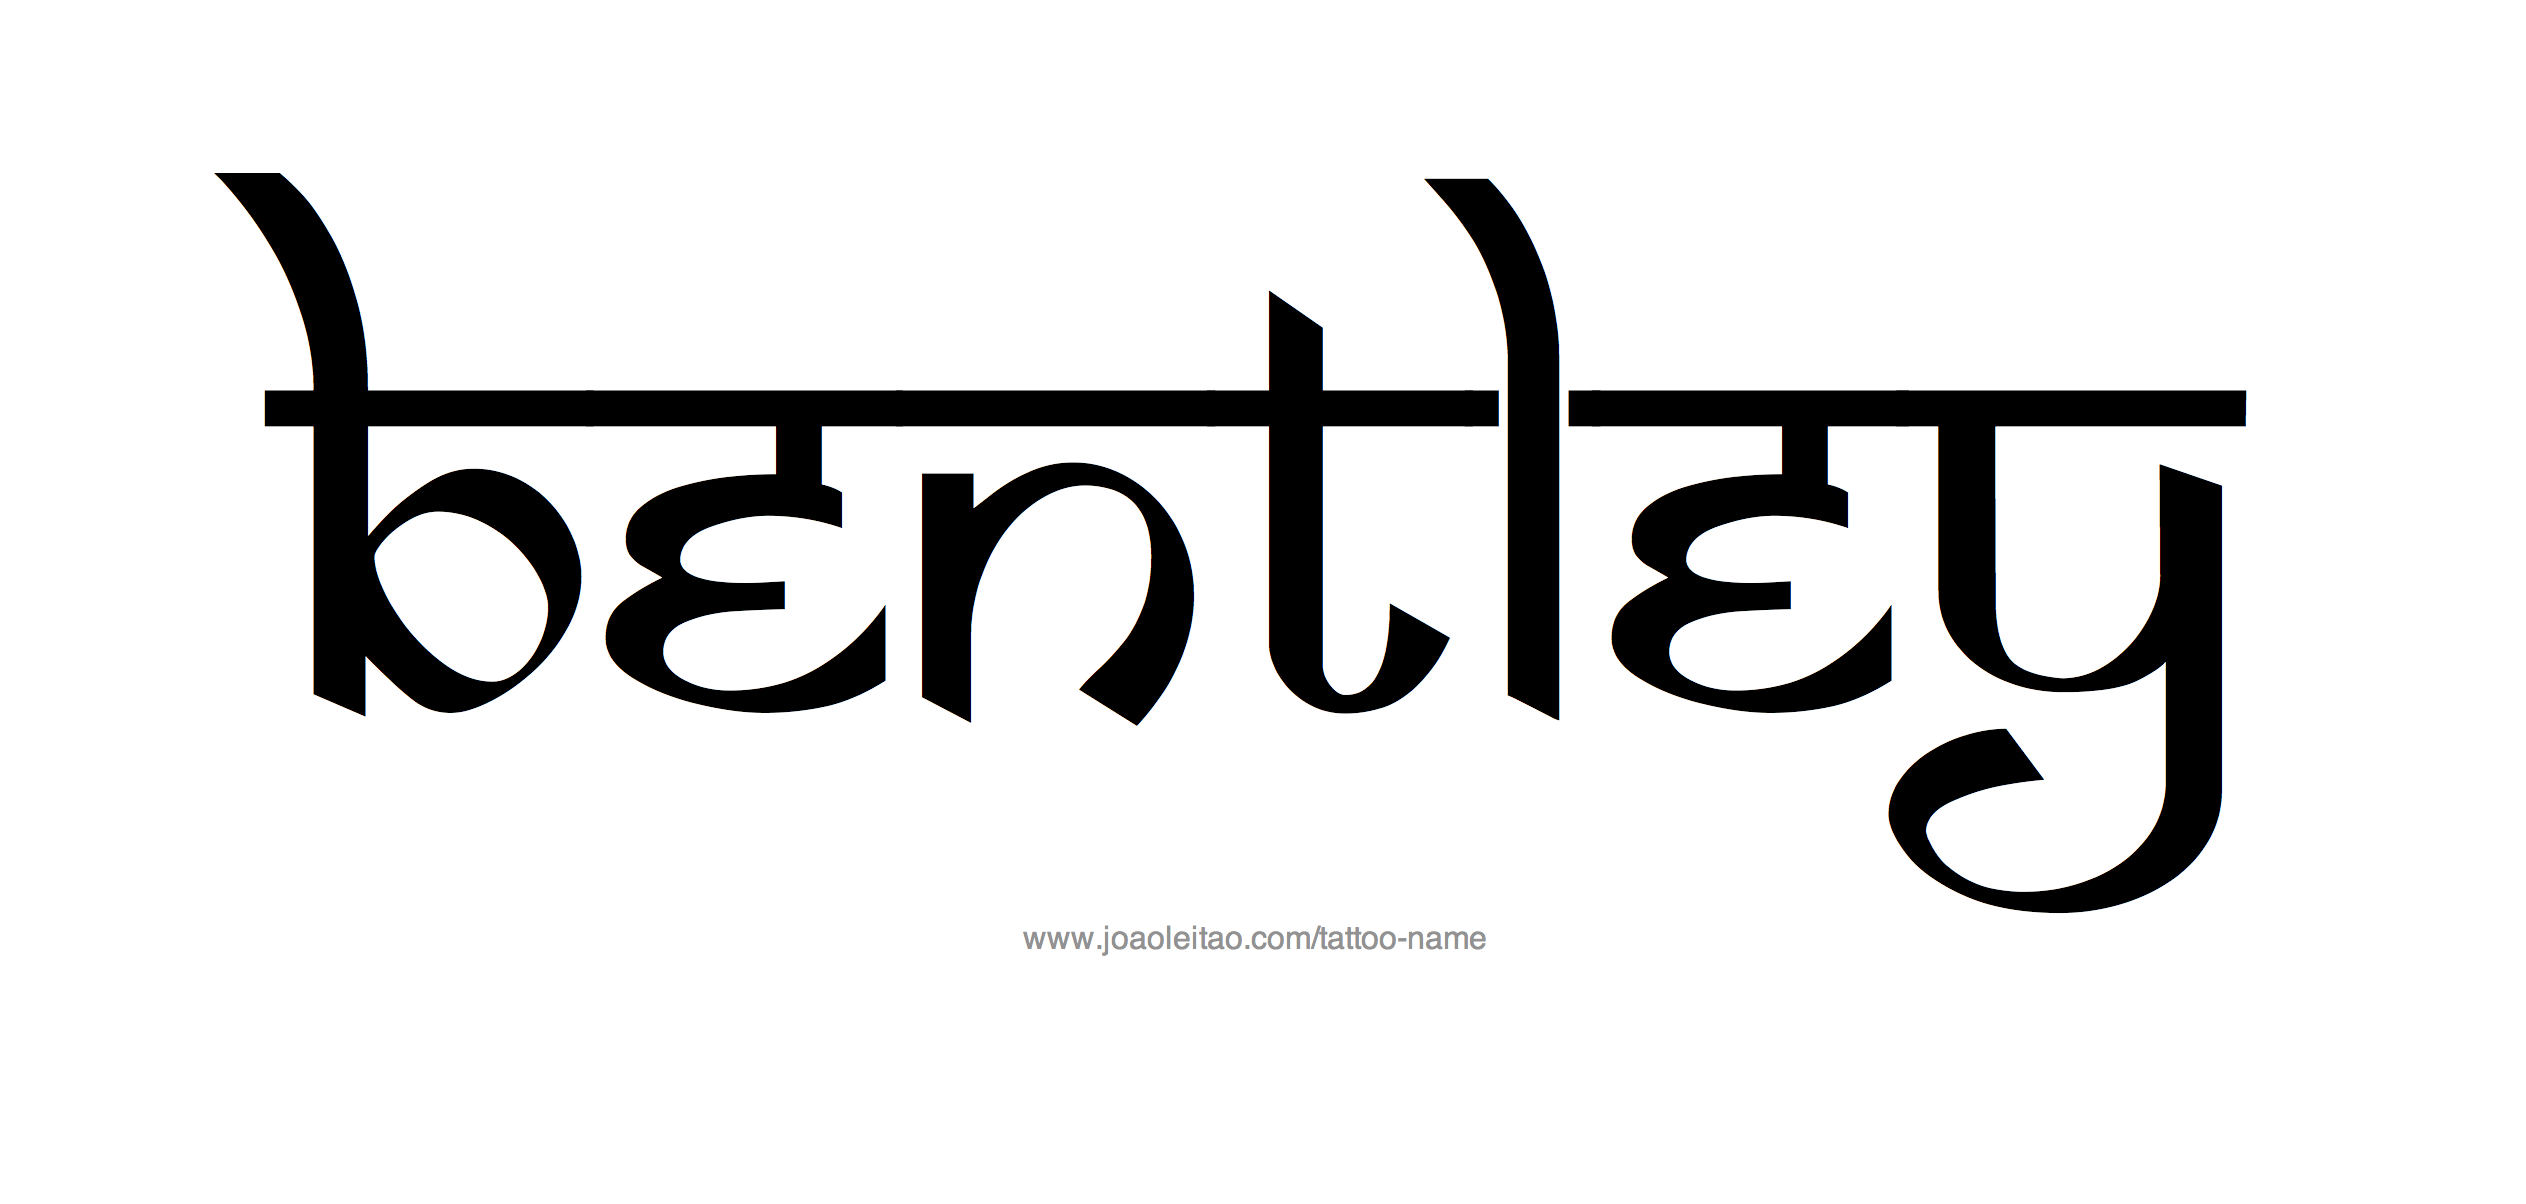 Muskan name logo in new hindi font  Hindi Graphics